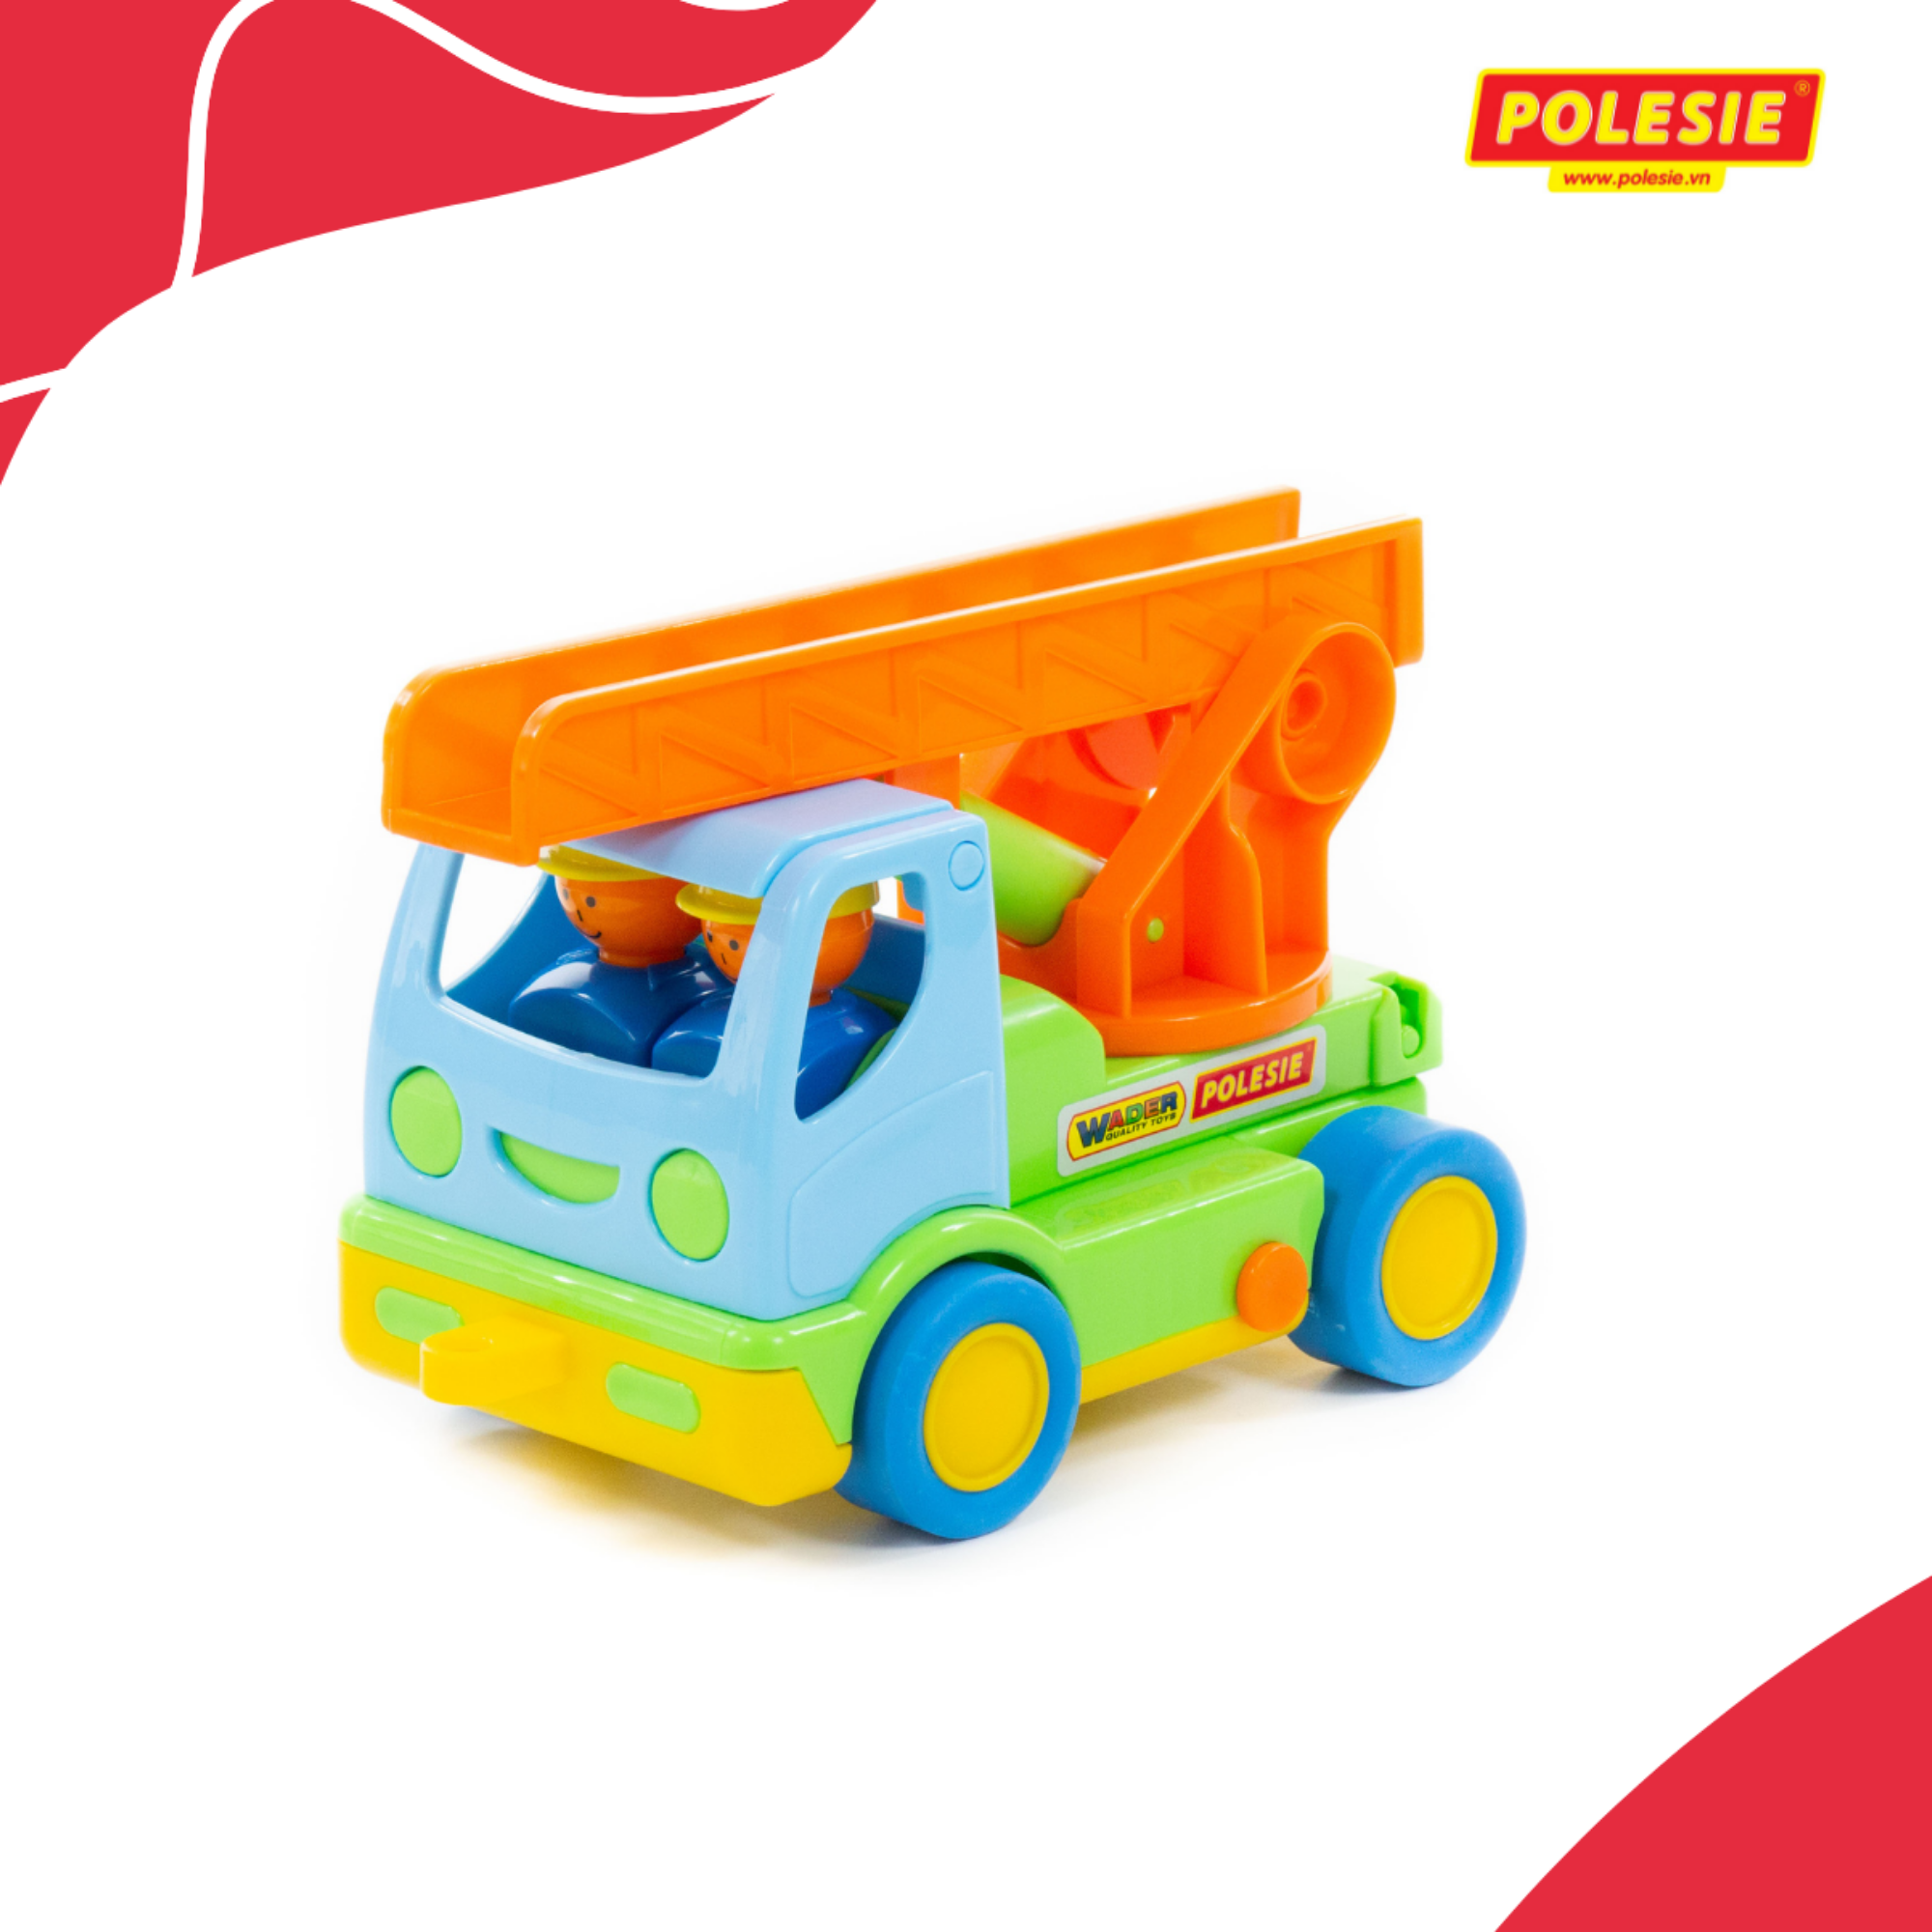 Xe tải cứu hỏa Hali đồ chơi Polesie 3225 - Hàng chính hãng nhập khẩu châu âu